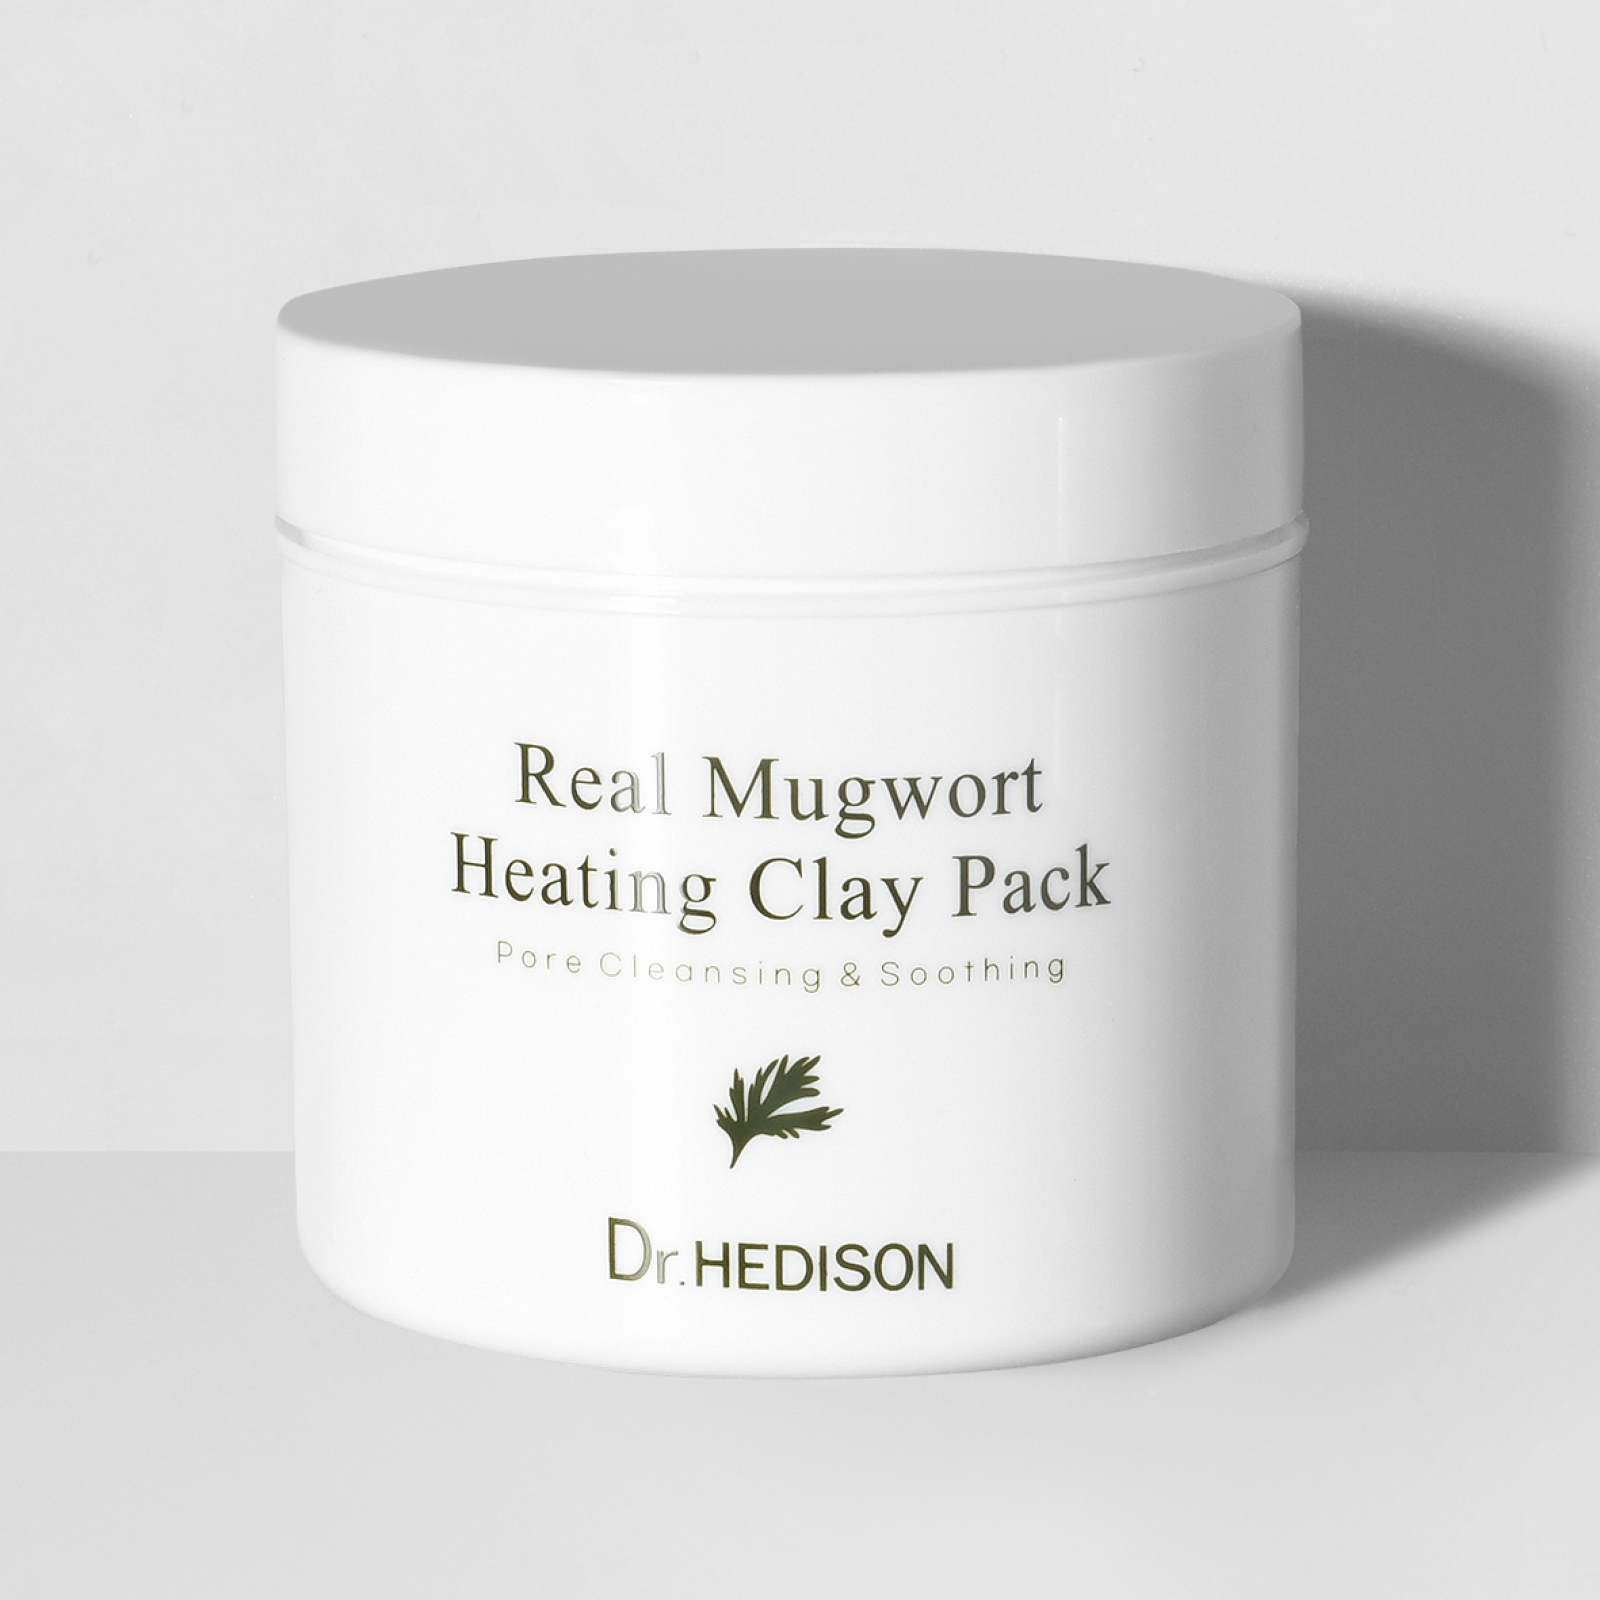 Розігрівальна маска проти чорних цяток з екстрактом полину Real Mugwort Heating Clay Pack від Dr.HEDISON